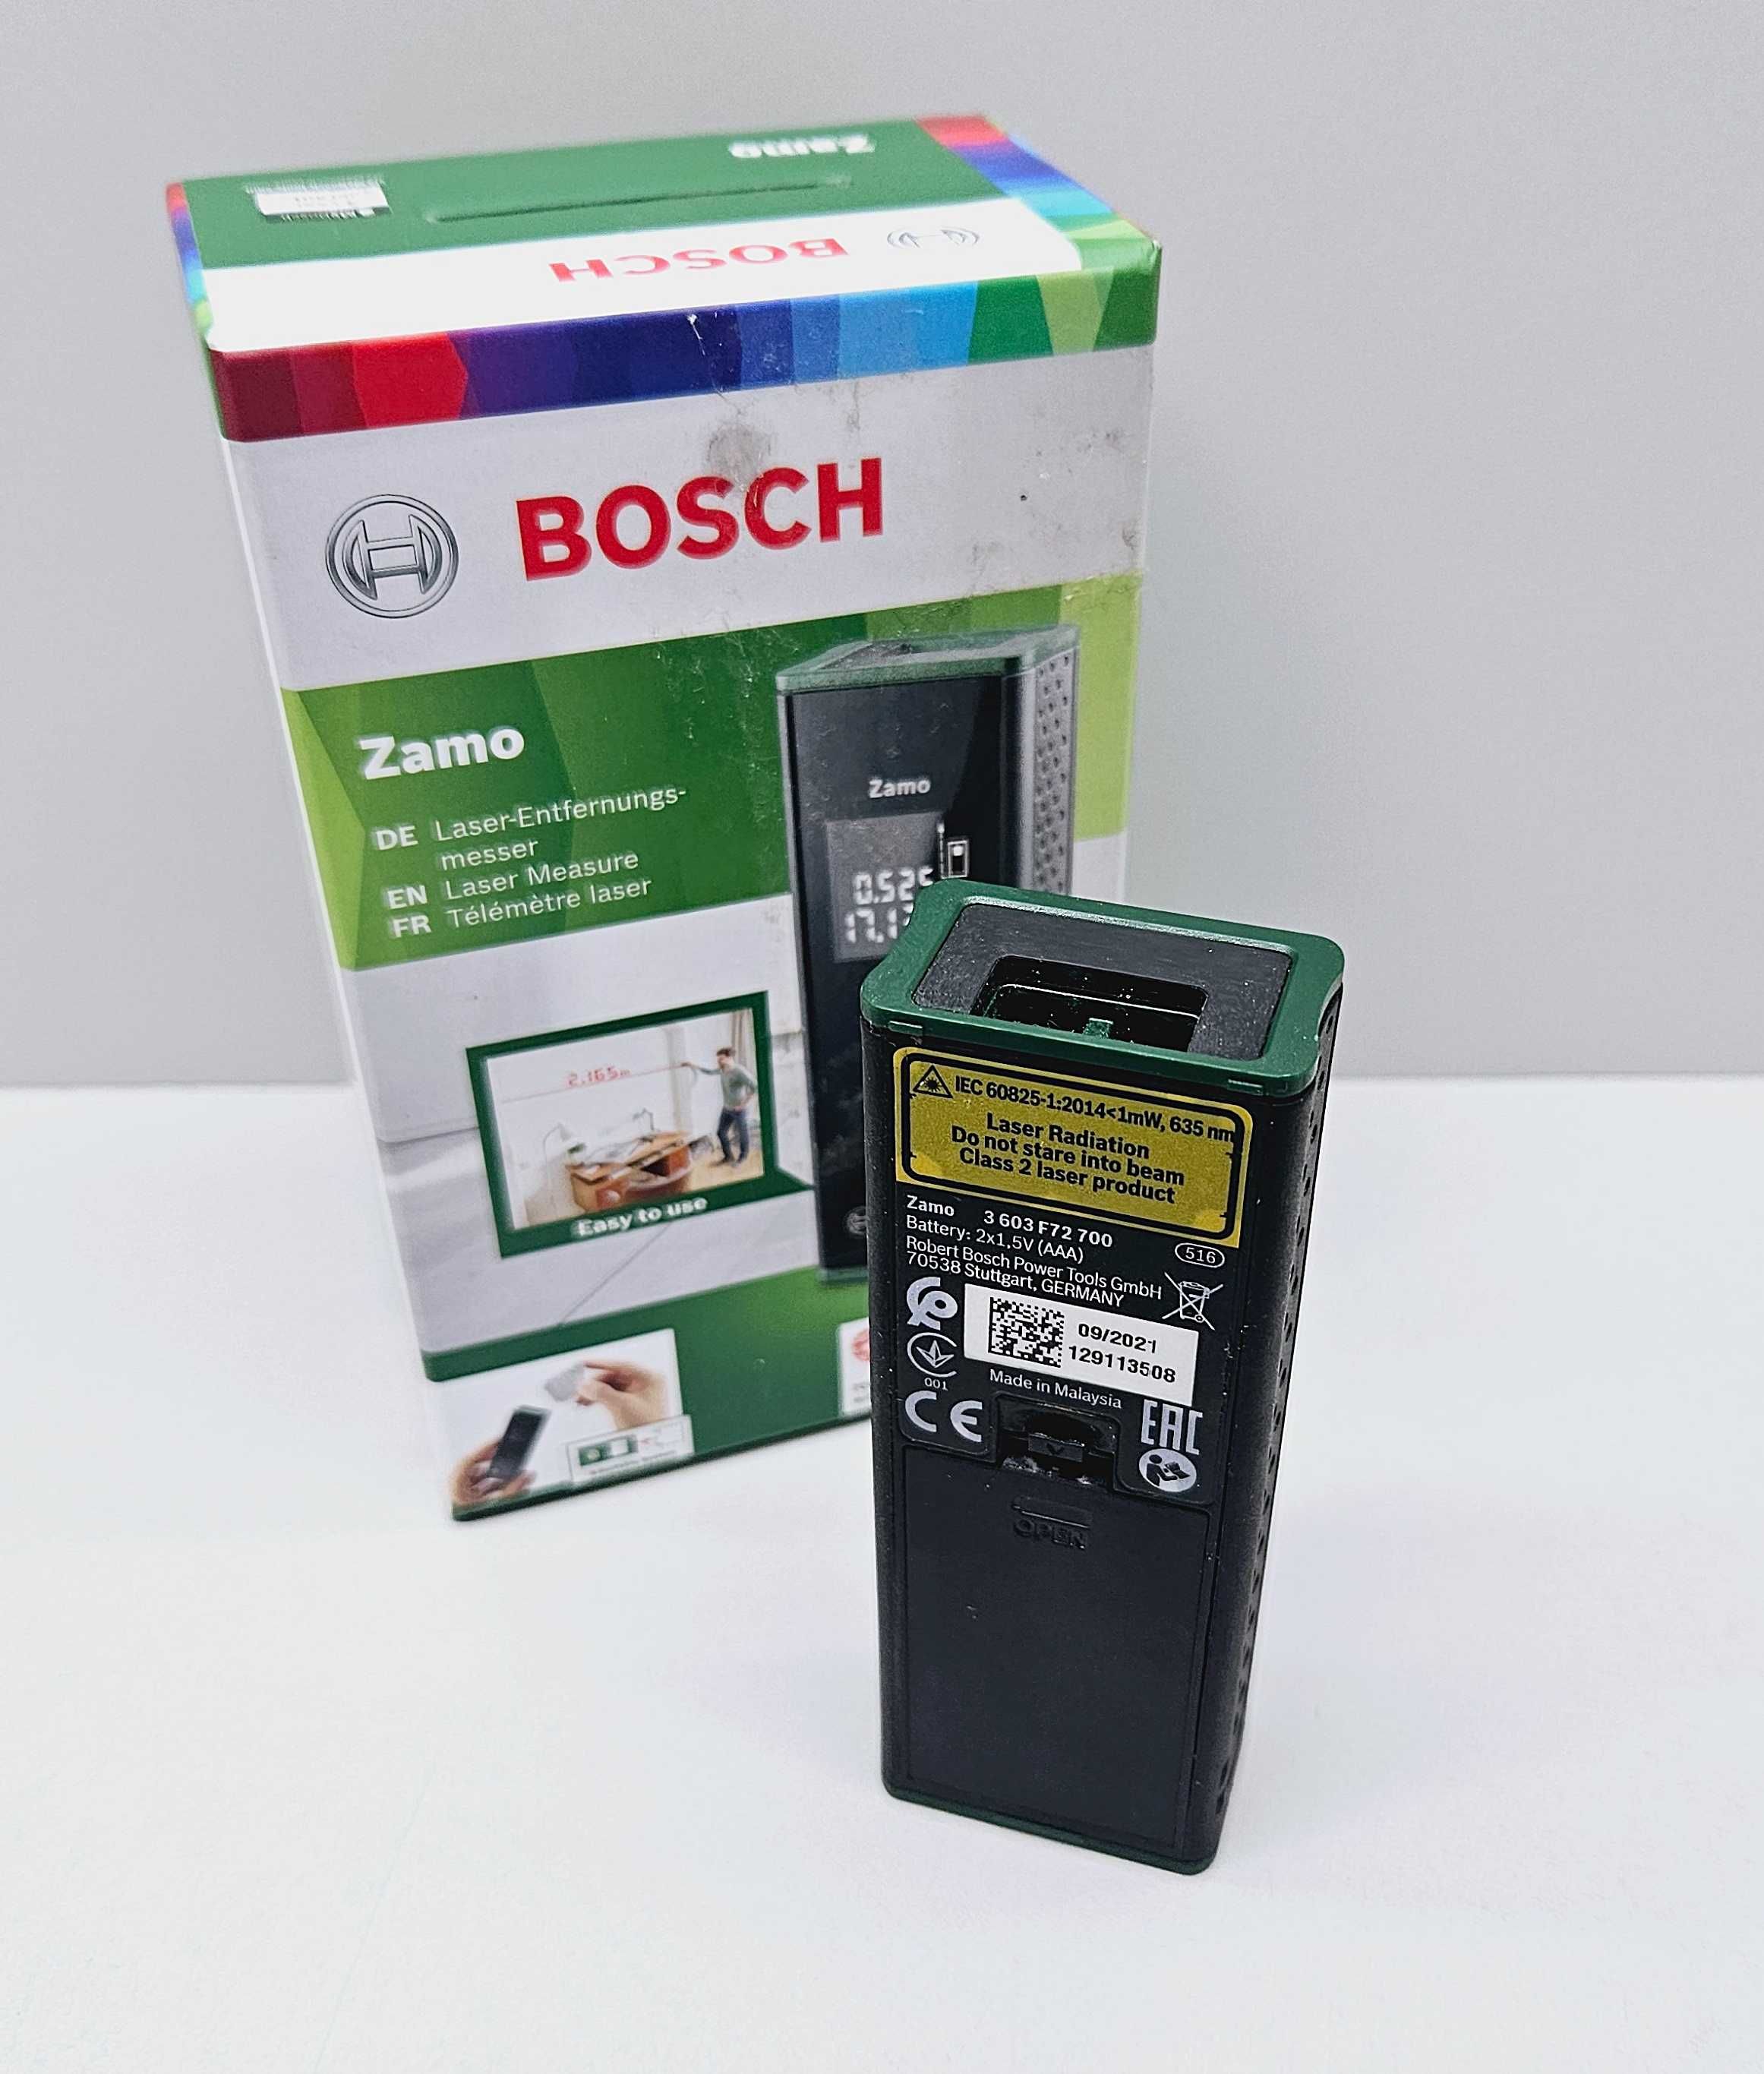 dalmierz laserowy Bosch Zamo III Solo.